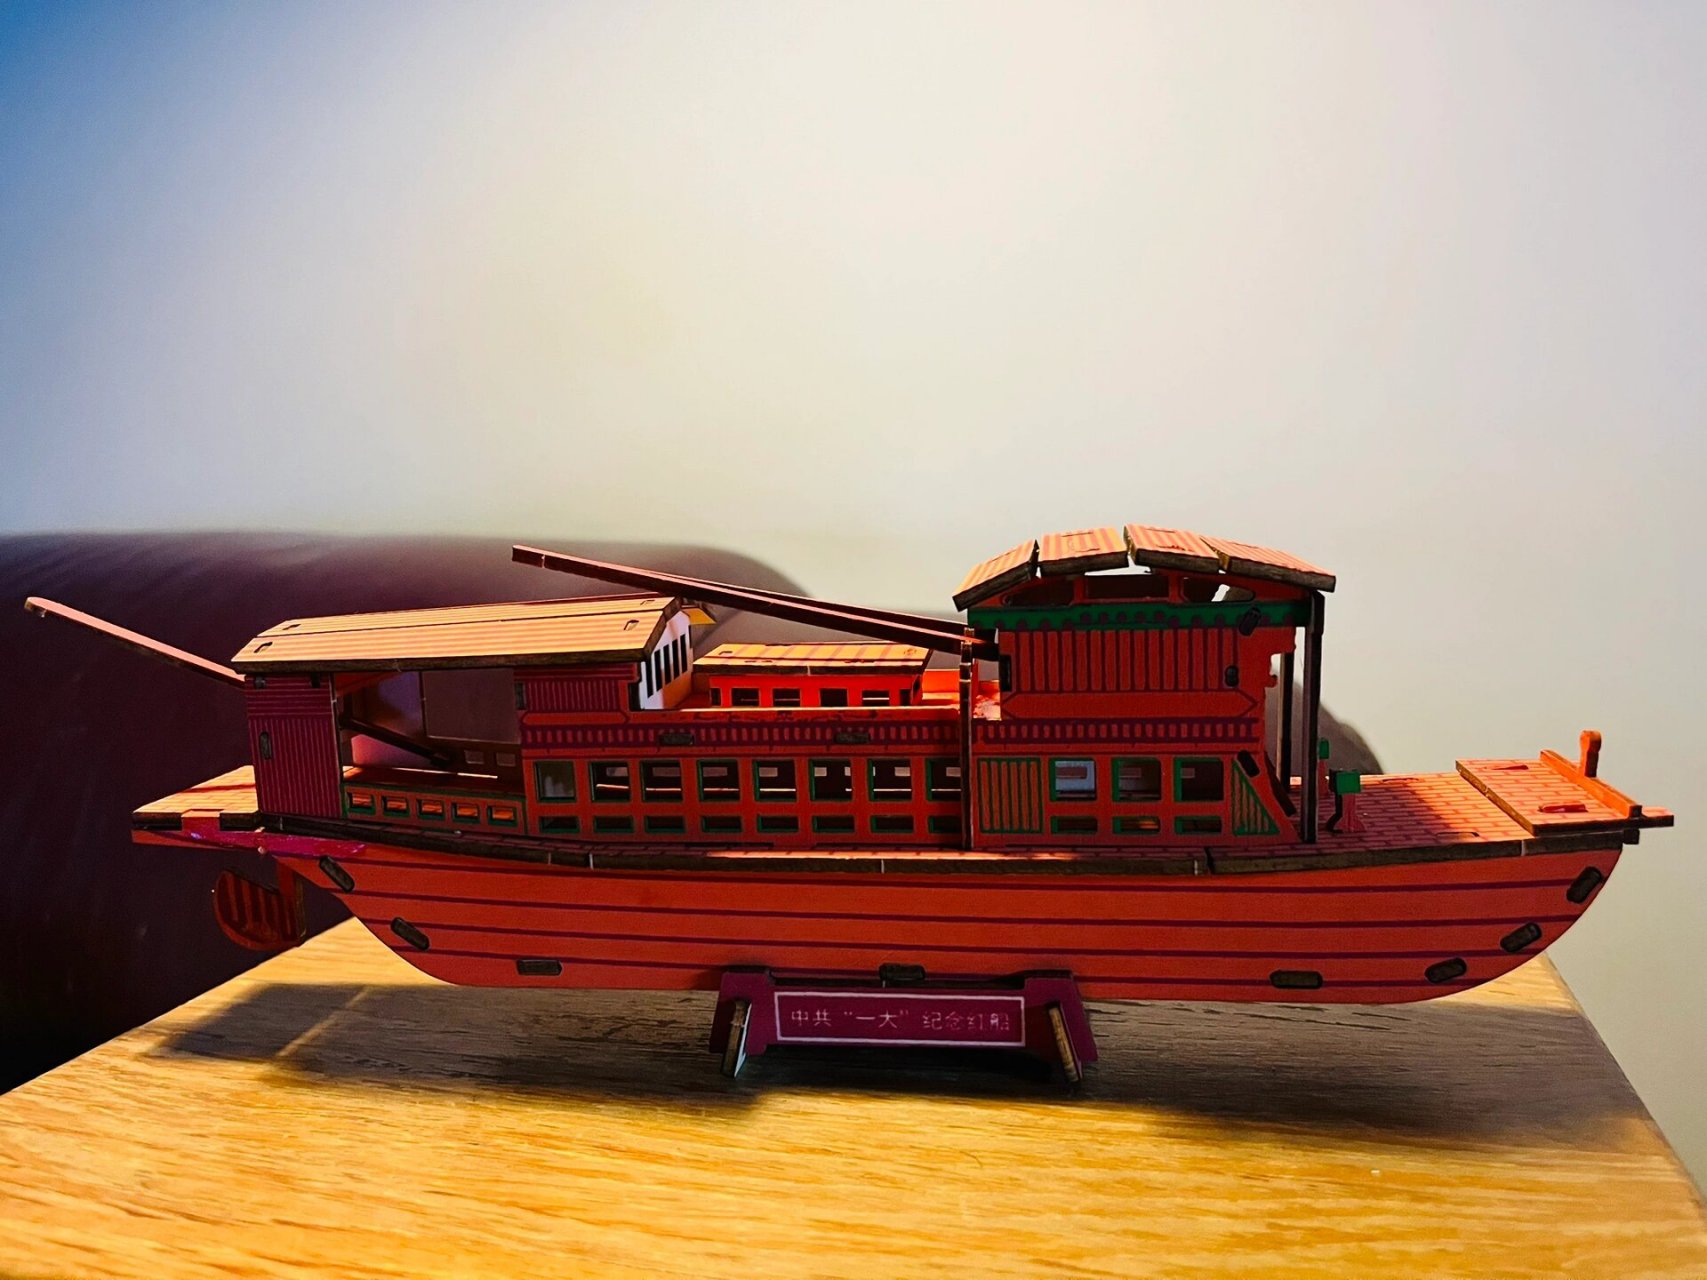 嘉兴南湖红船模型 双休日做手工,大概1